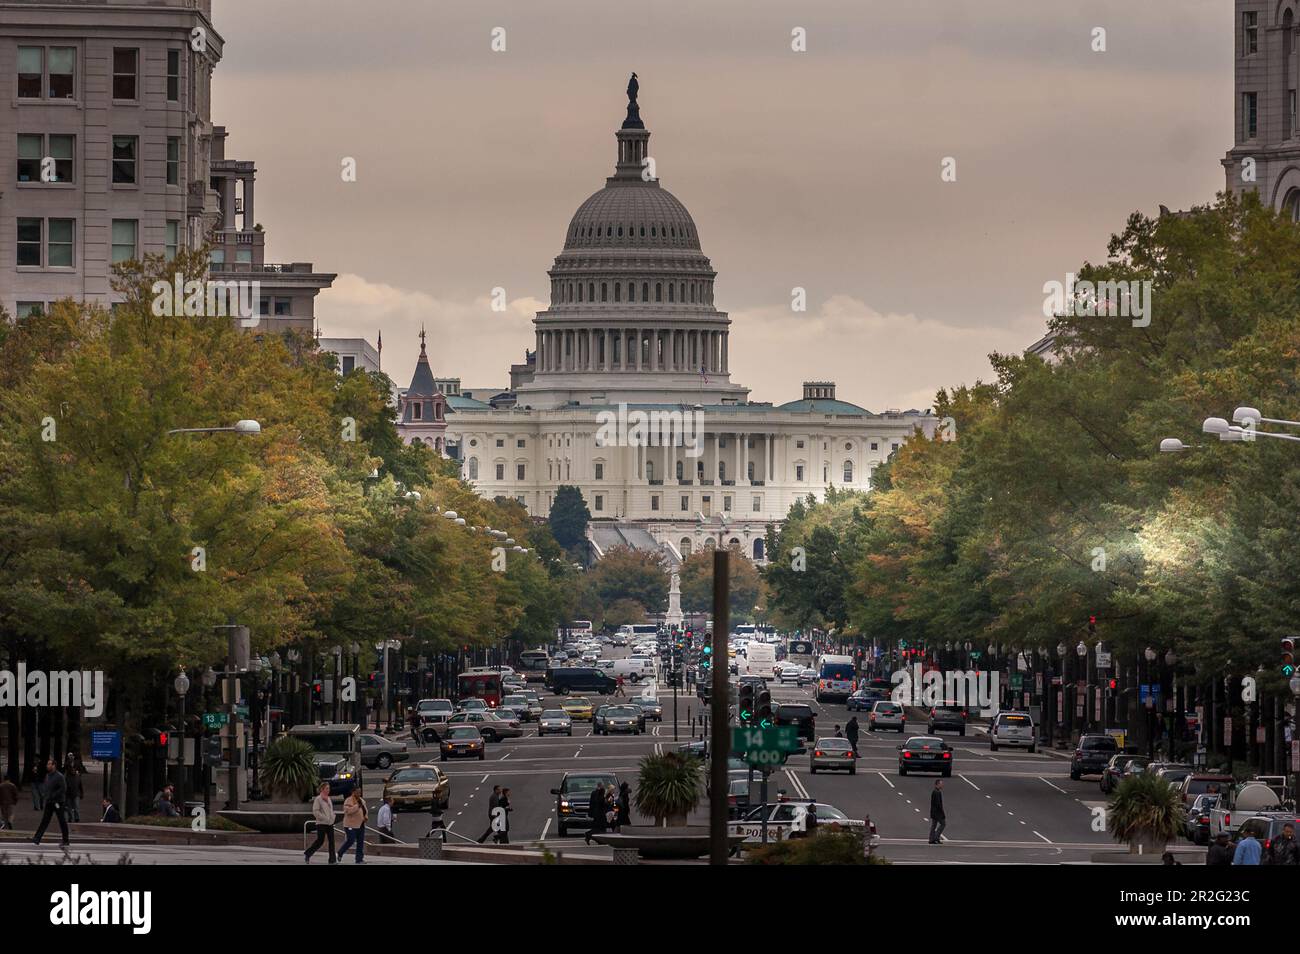 Faszinierender Blick auf den Capitol Hill: Das berühmte Kapitol der Vereinigten Staaten inmitten der pulsierenden Stadtlandschaft von Washington, D.C. Stockfoto